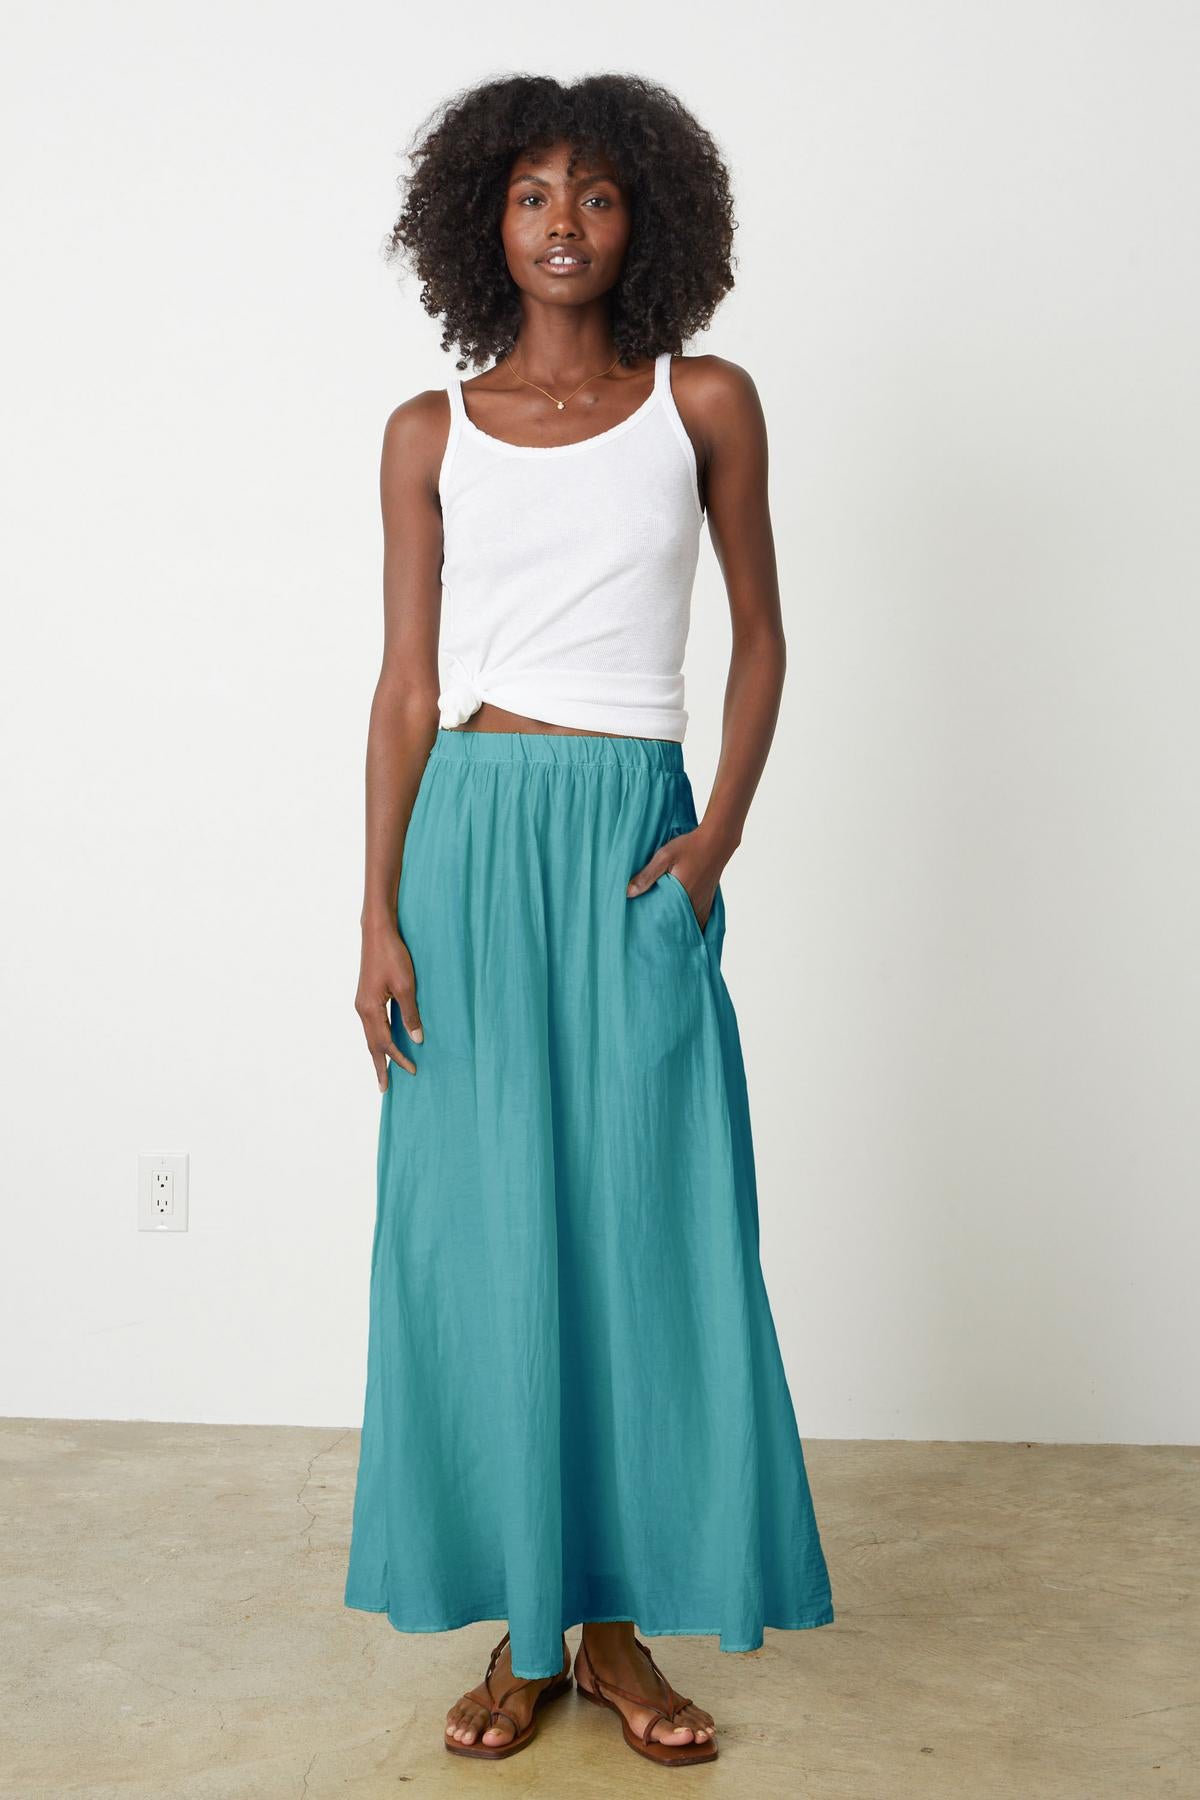 The model is wearing a Velvet by Graham & Spencer Mariela Maxi Skirt.-26262258352321